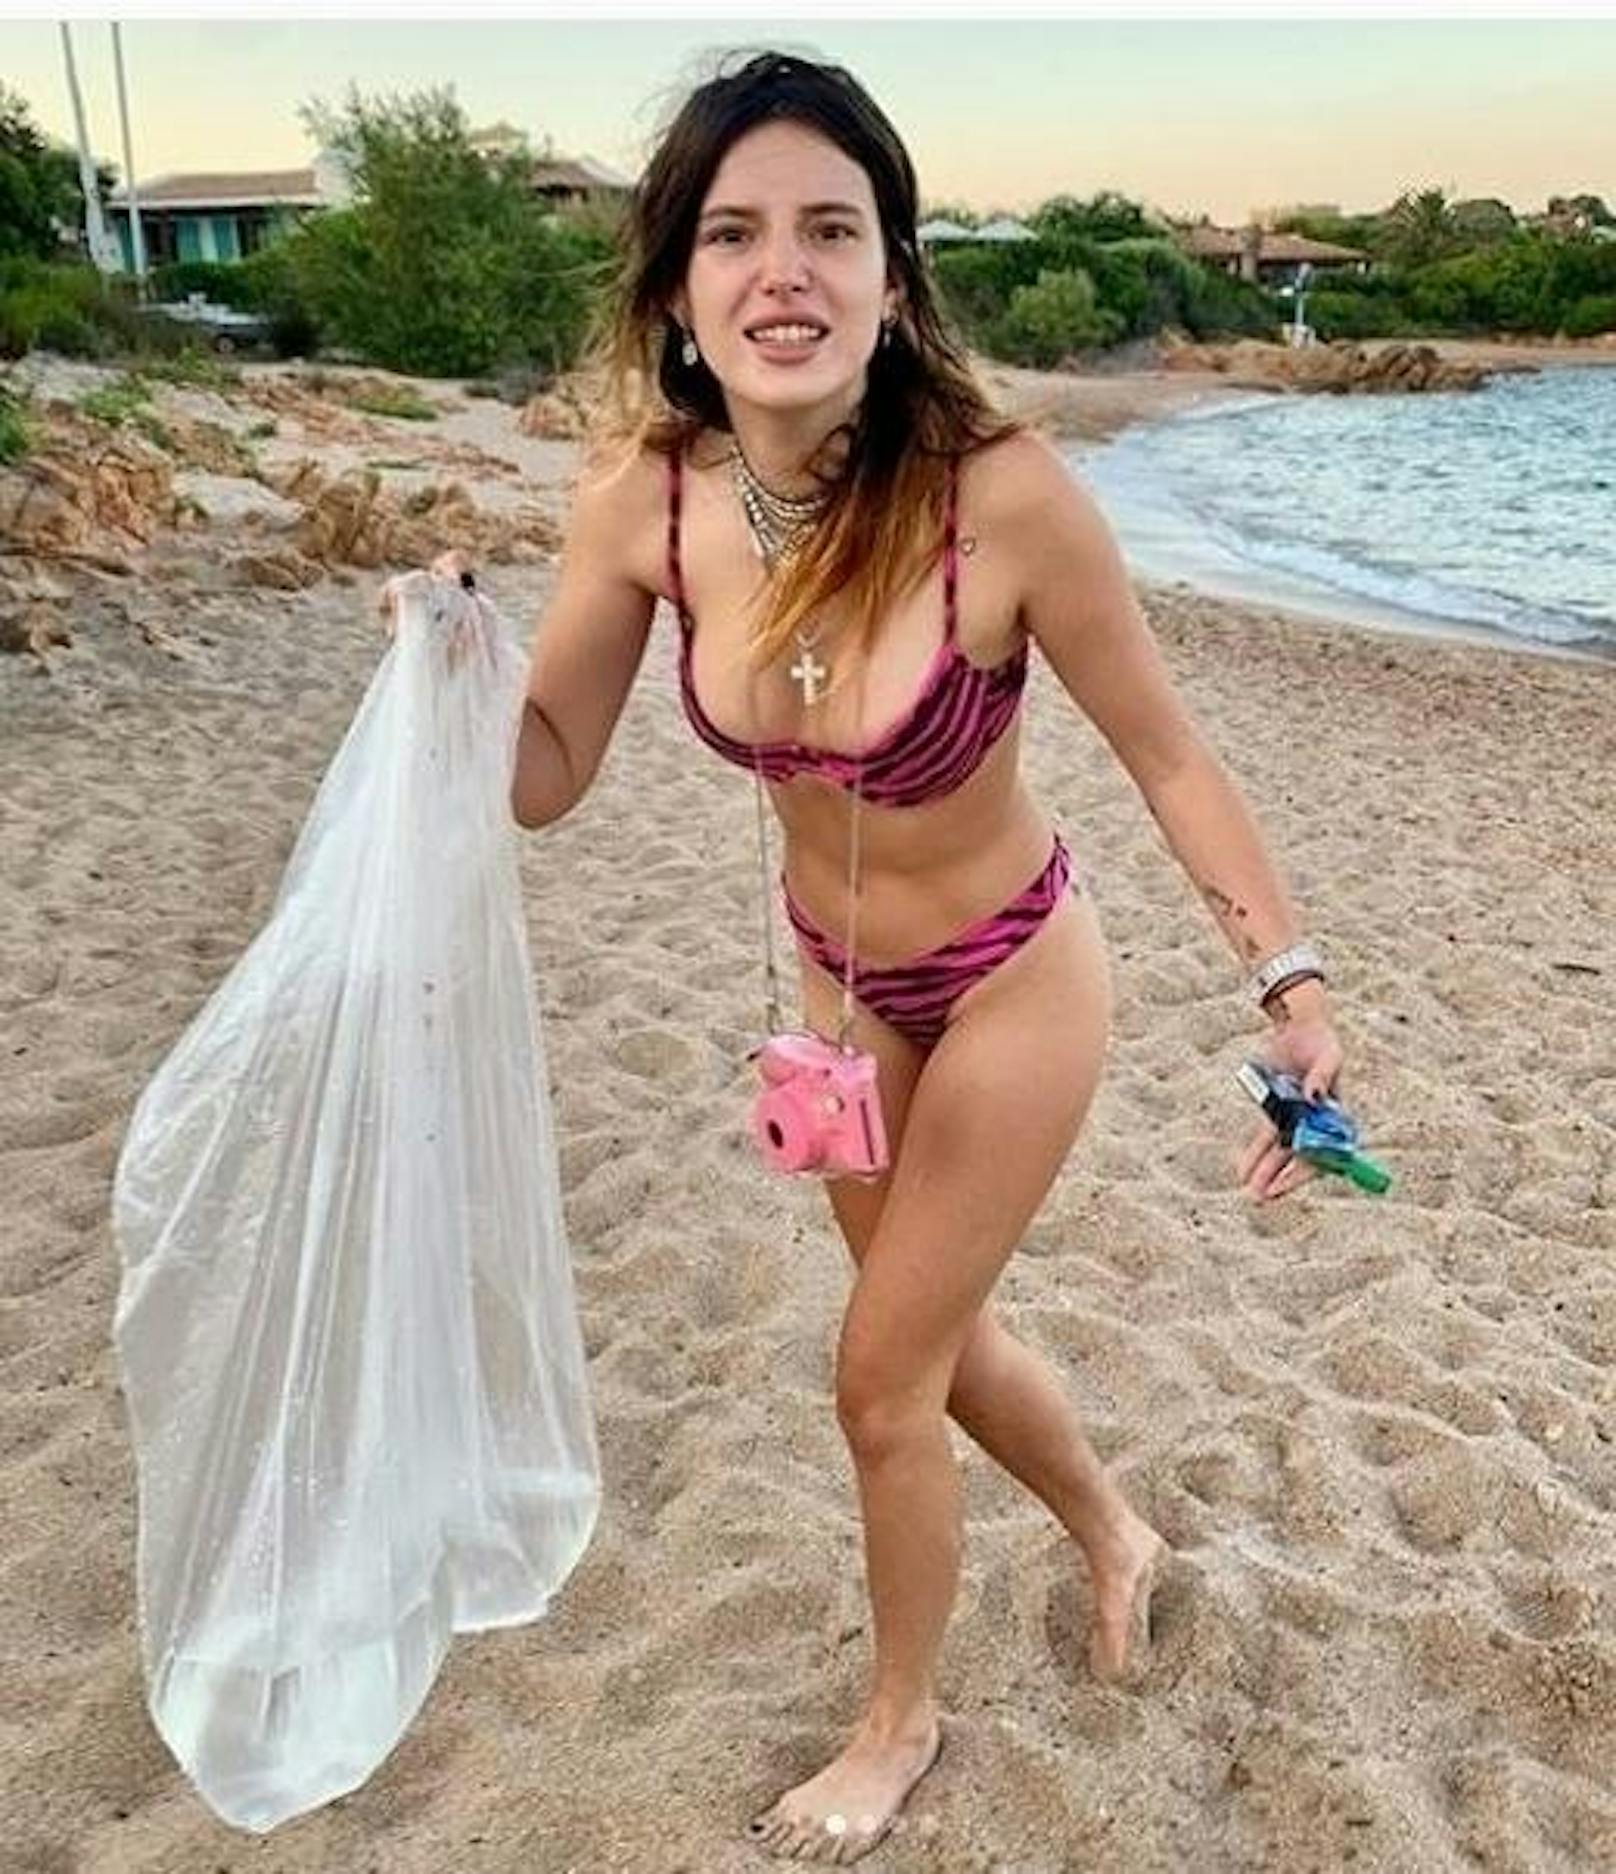 16.09.2019: Haltet eure Strände sauber! Bella Thorne geht mit gutem Beispiel voran und zeigt auf Instagram, was man mit Plastikmüll machen sollte, wenn man ihn am Strand findet.